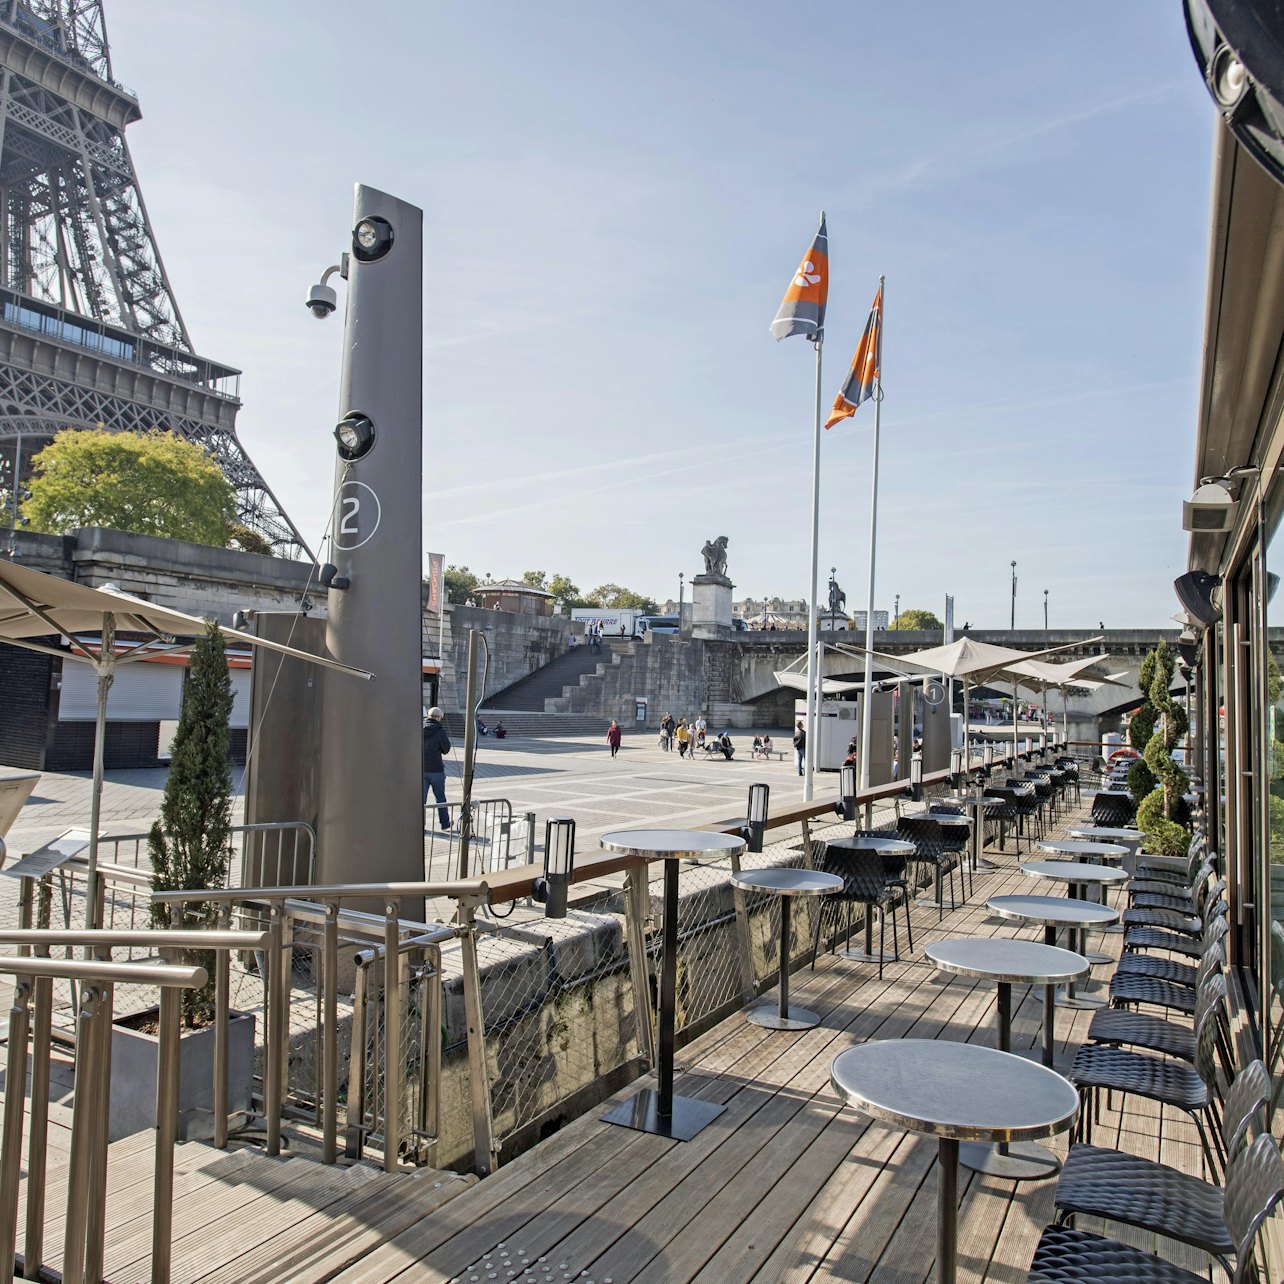 Crucero turístico por el Sena + Comida en Le Bistro Parisien - Alojamientos en Paris